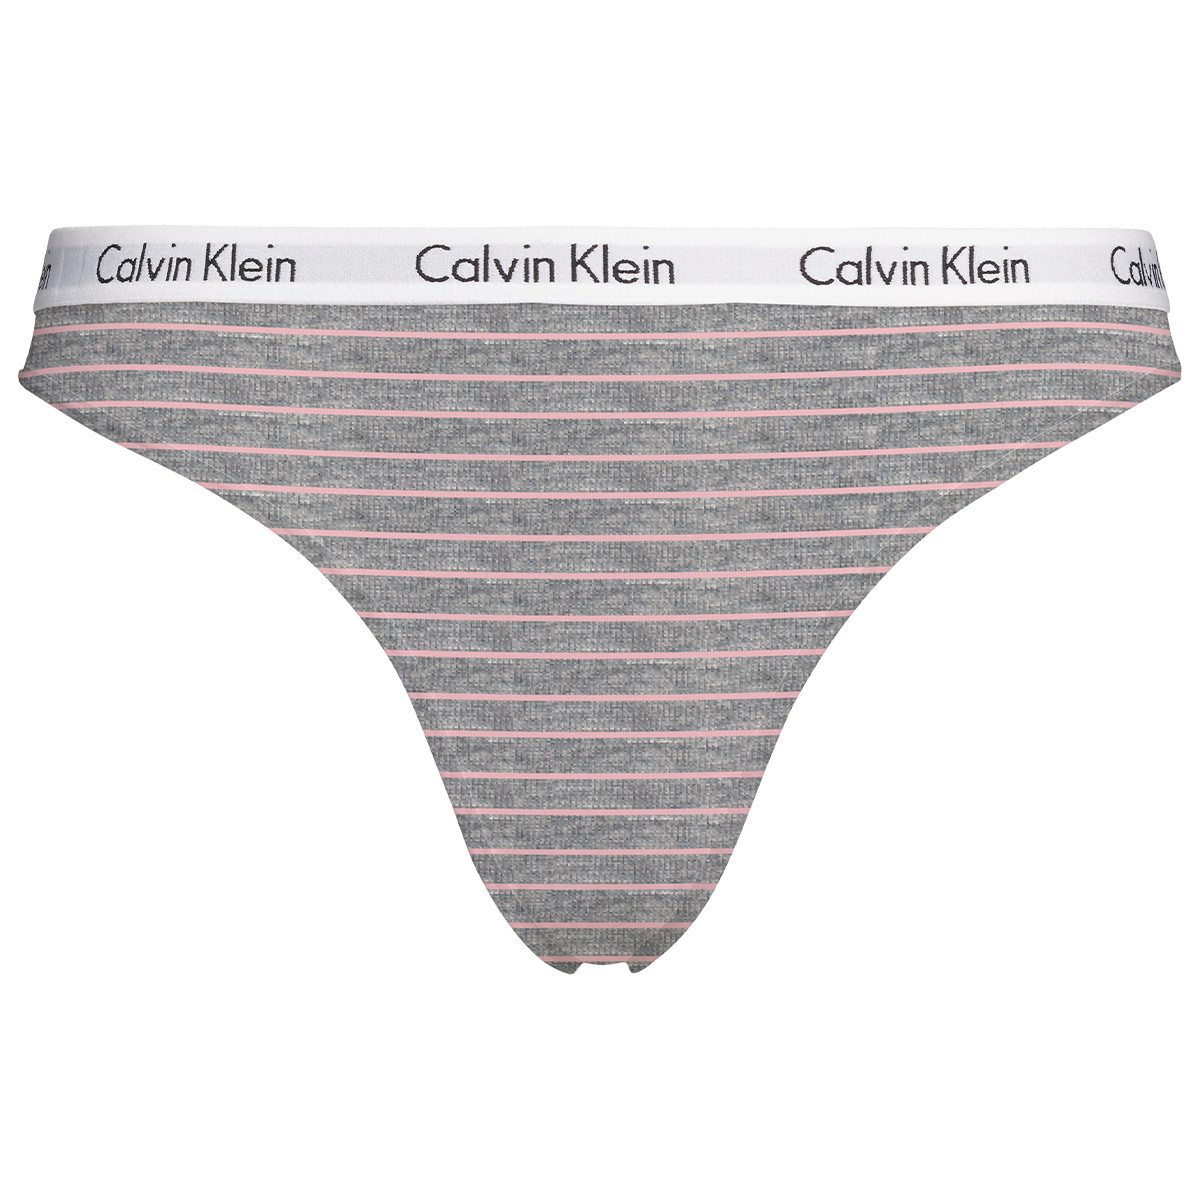 Calvin Klein Lingeri Tai De Ku, Farve: Sort/Hvid, Størrelse: L, Dame